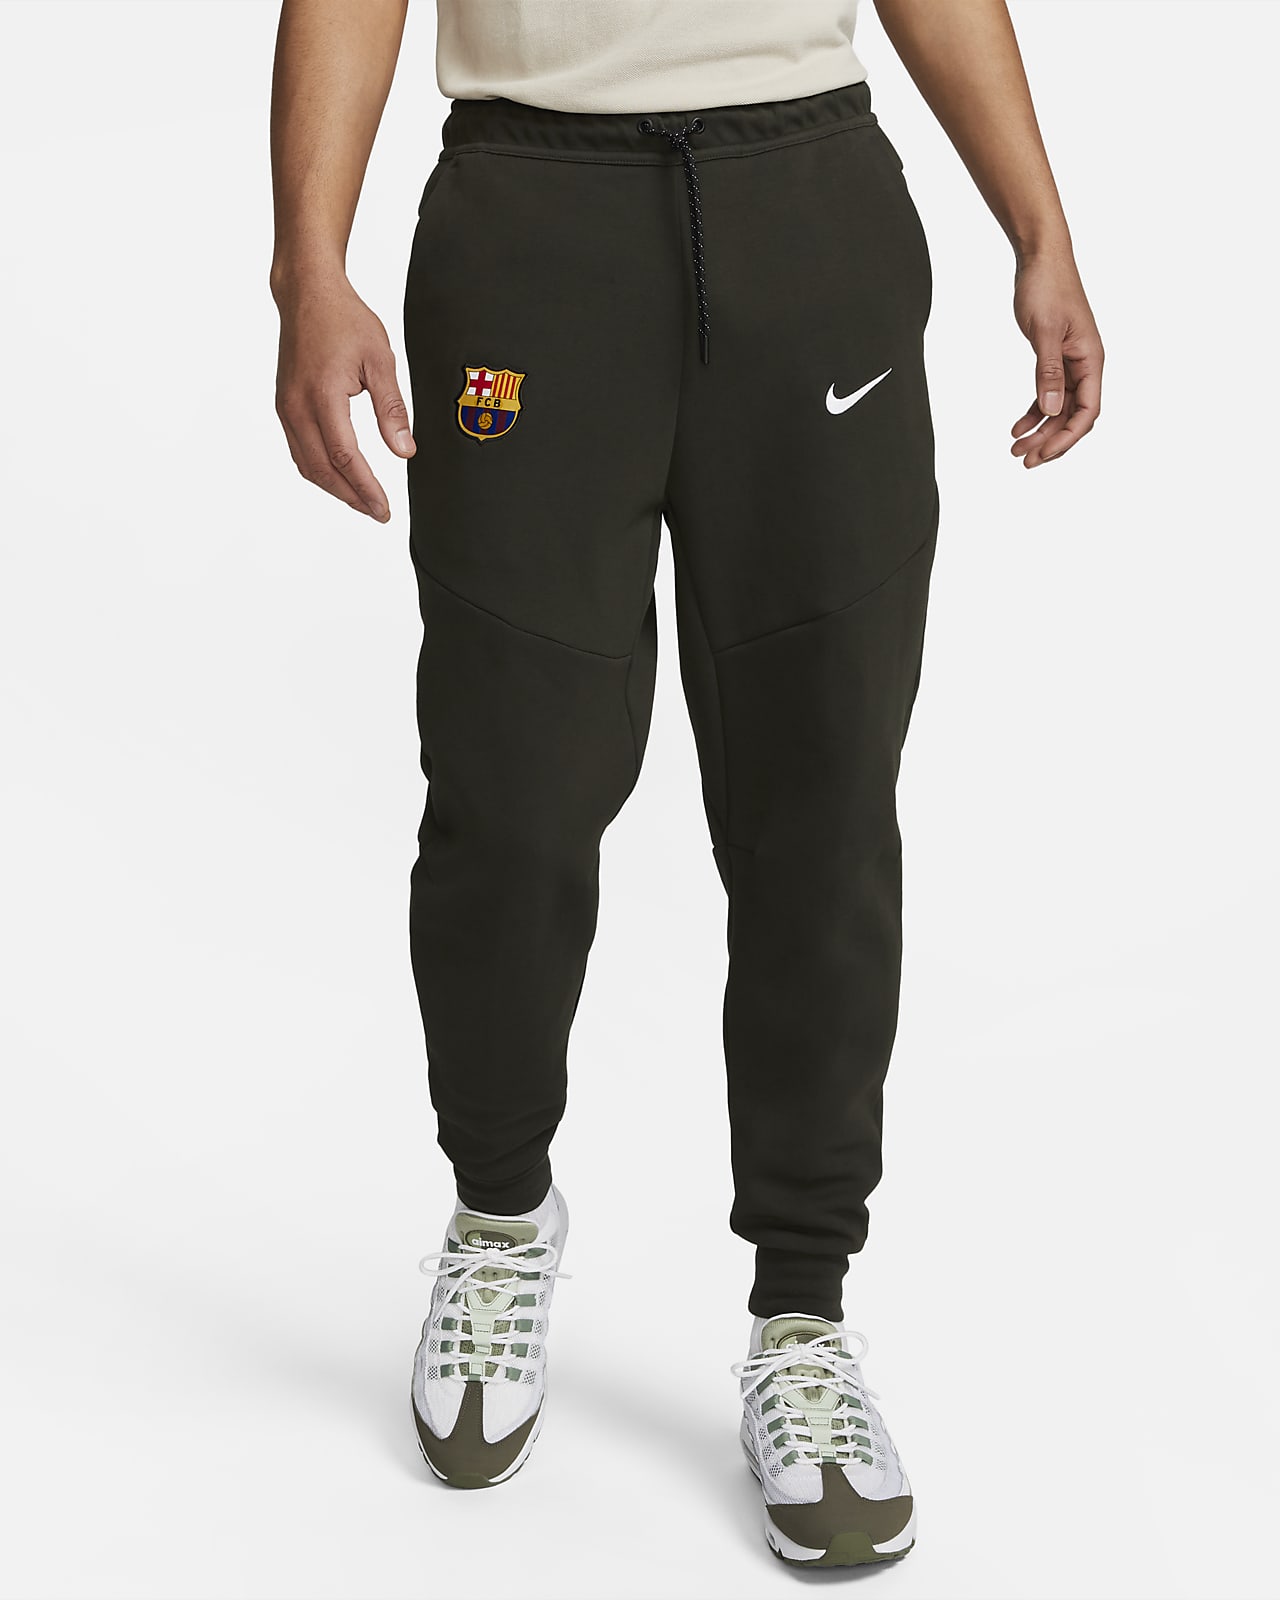 Ανδρικό παντελόνι φόρμας Nike Μπαρτσελόνα Tech Fleece